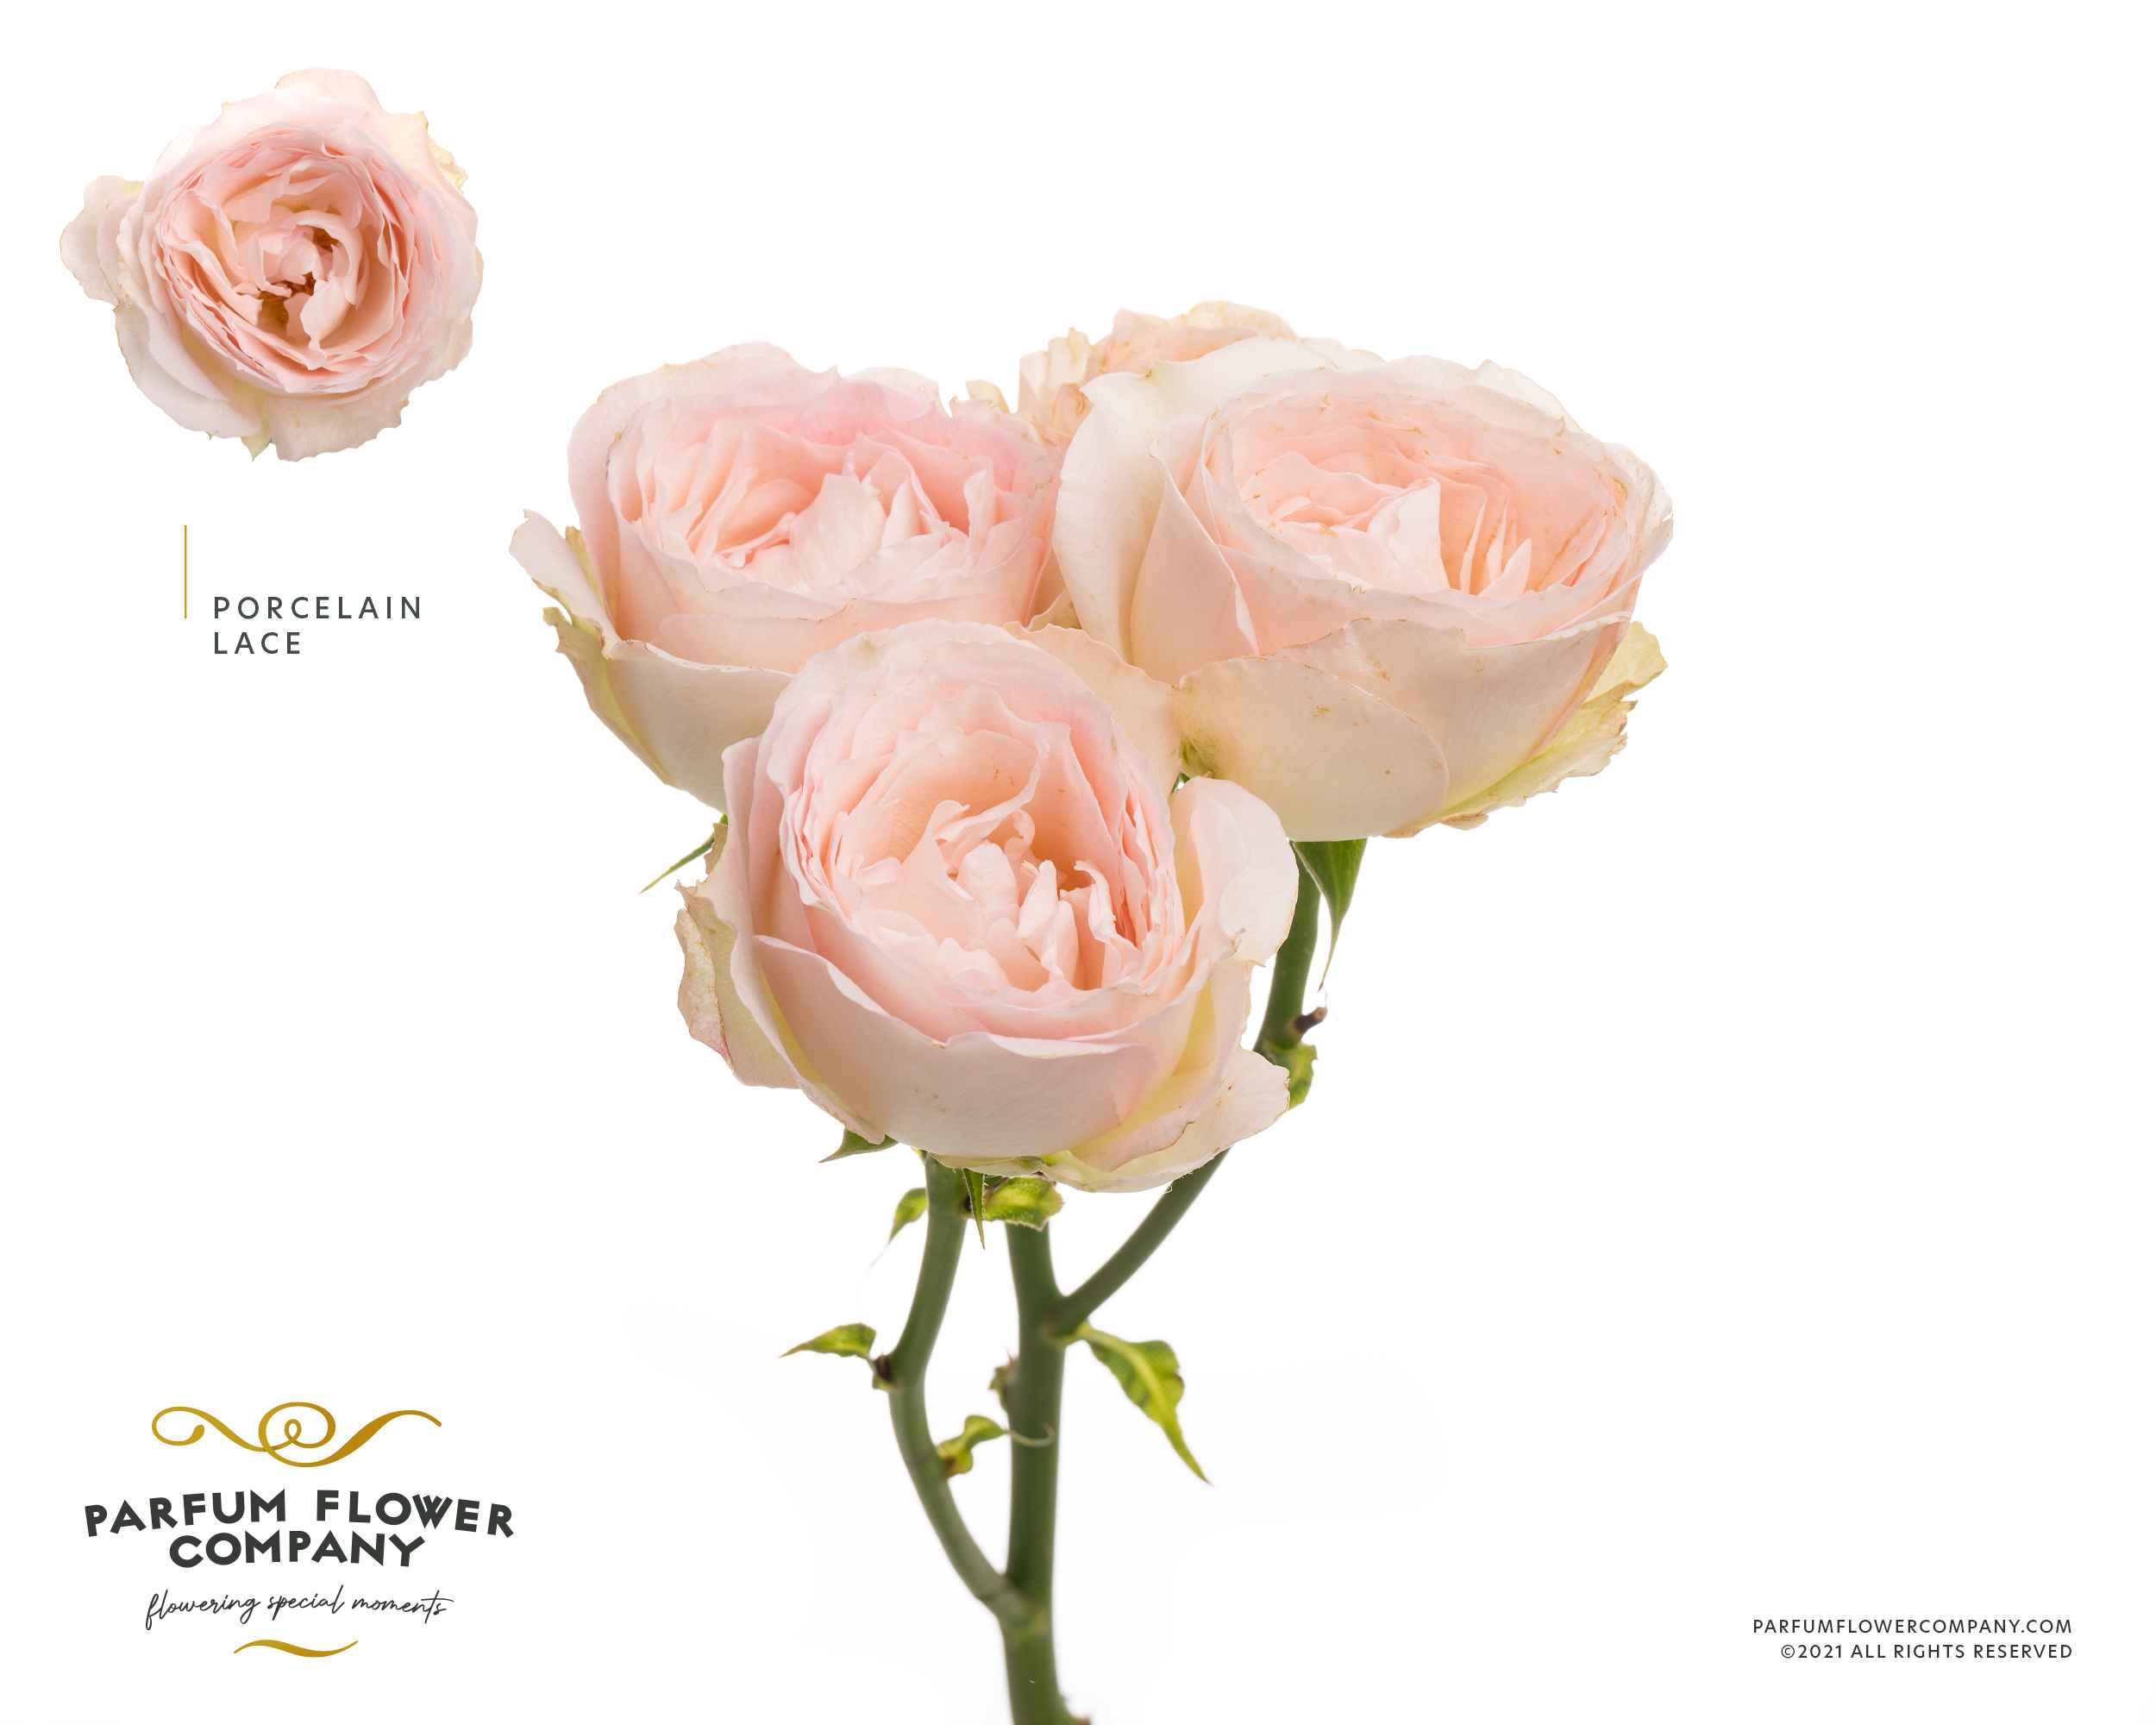 Срезанные цветы оптом Rosa sp lace porcelain от 12шт из Голландии с доставкой по России